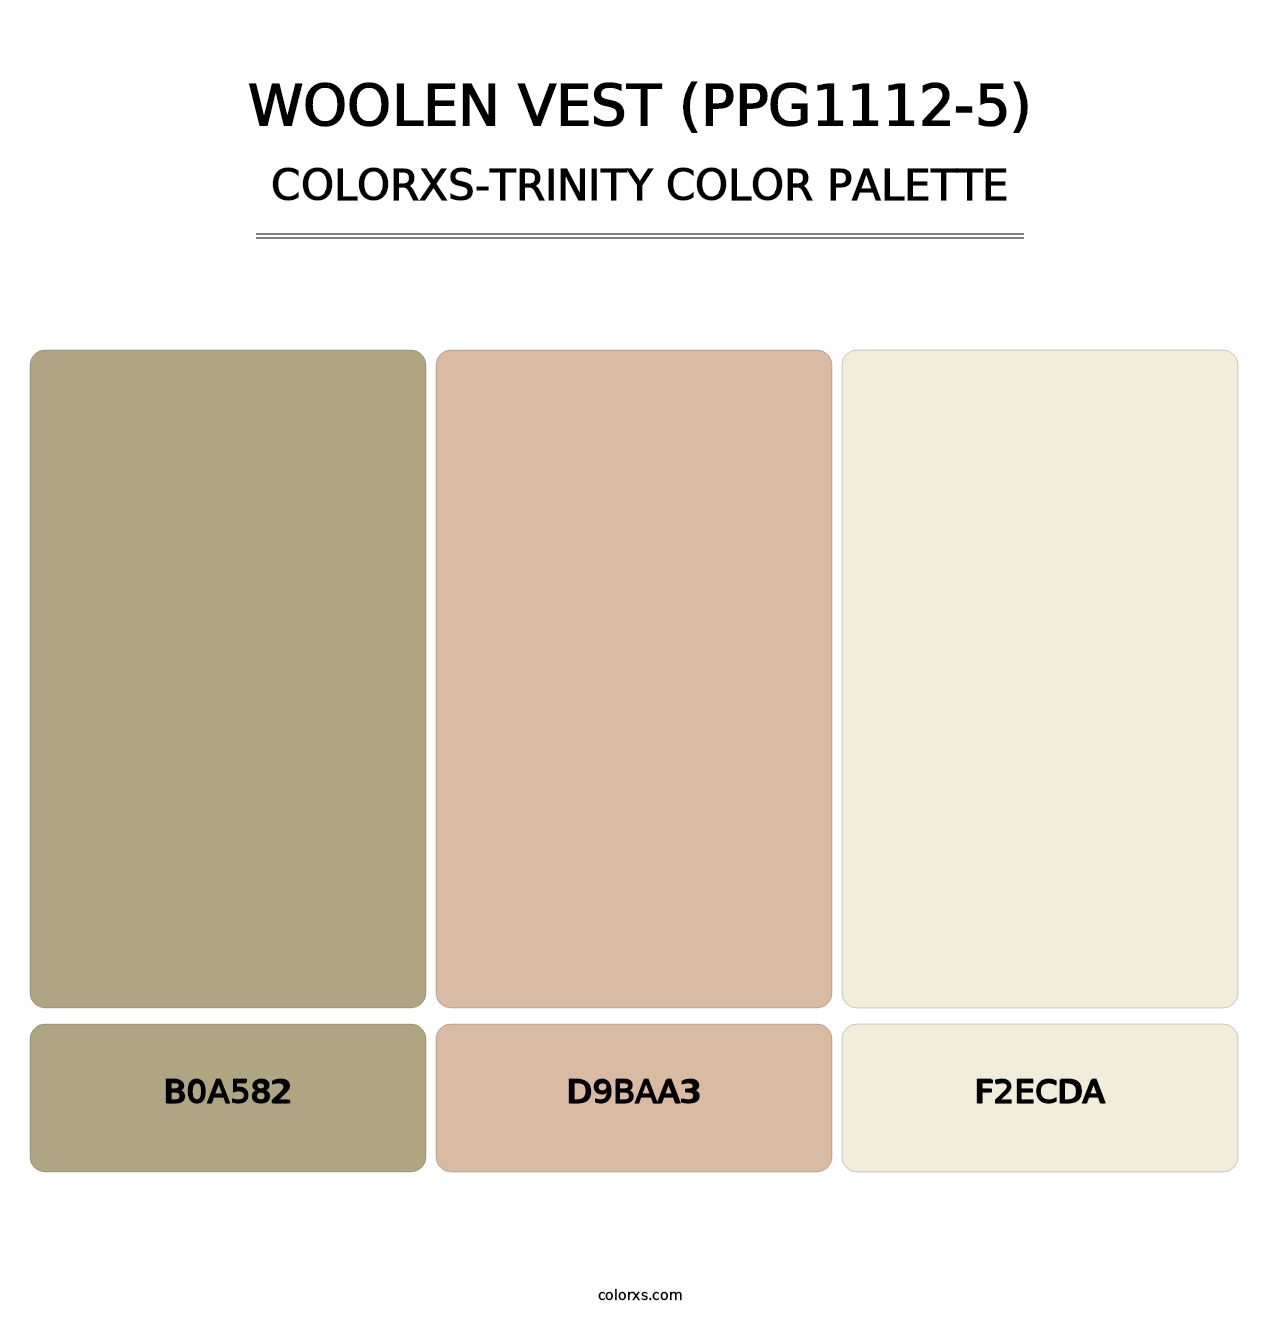 Woolen Vest (PPG1112-5) - Colorxs Trinity Palette